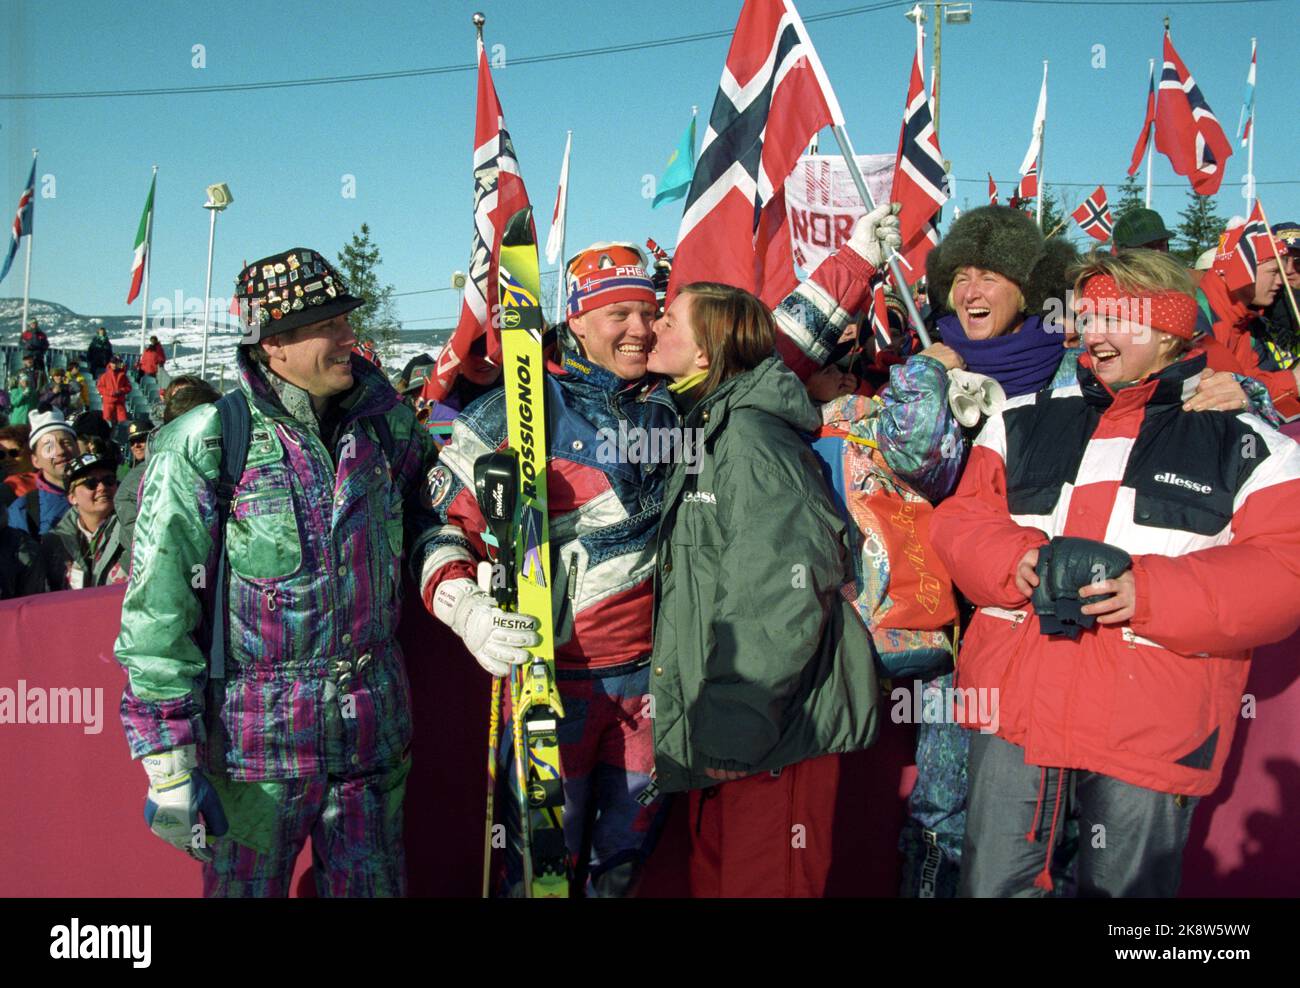 Hafjell 19940225. Olimpiadi invernali a Lillehammer Harald Chr. Strand Nilsen ha preso il bronzo nella combinazione alpina a Hafjell. Qui viene baciato e lodato dagli entusiasti spettatori norvegesi con bandiere norvegesi. Foto: Calle Törnström / NTB Foto Stock